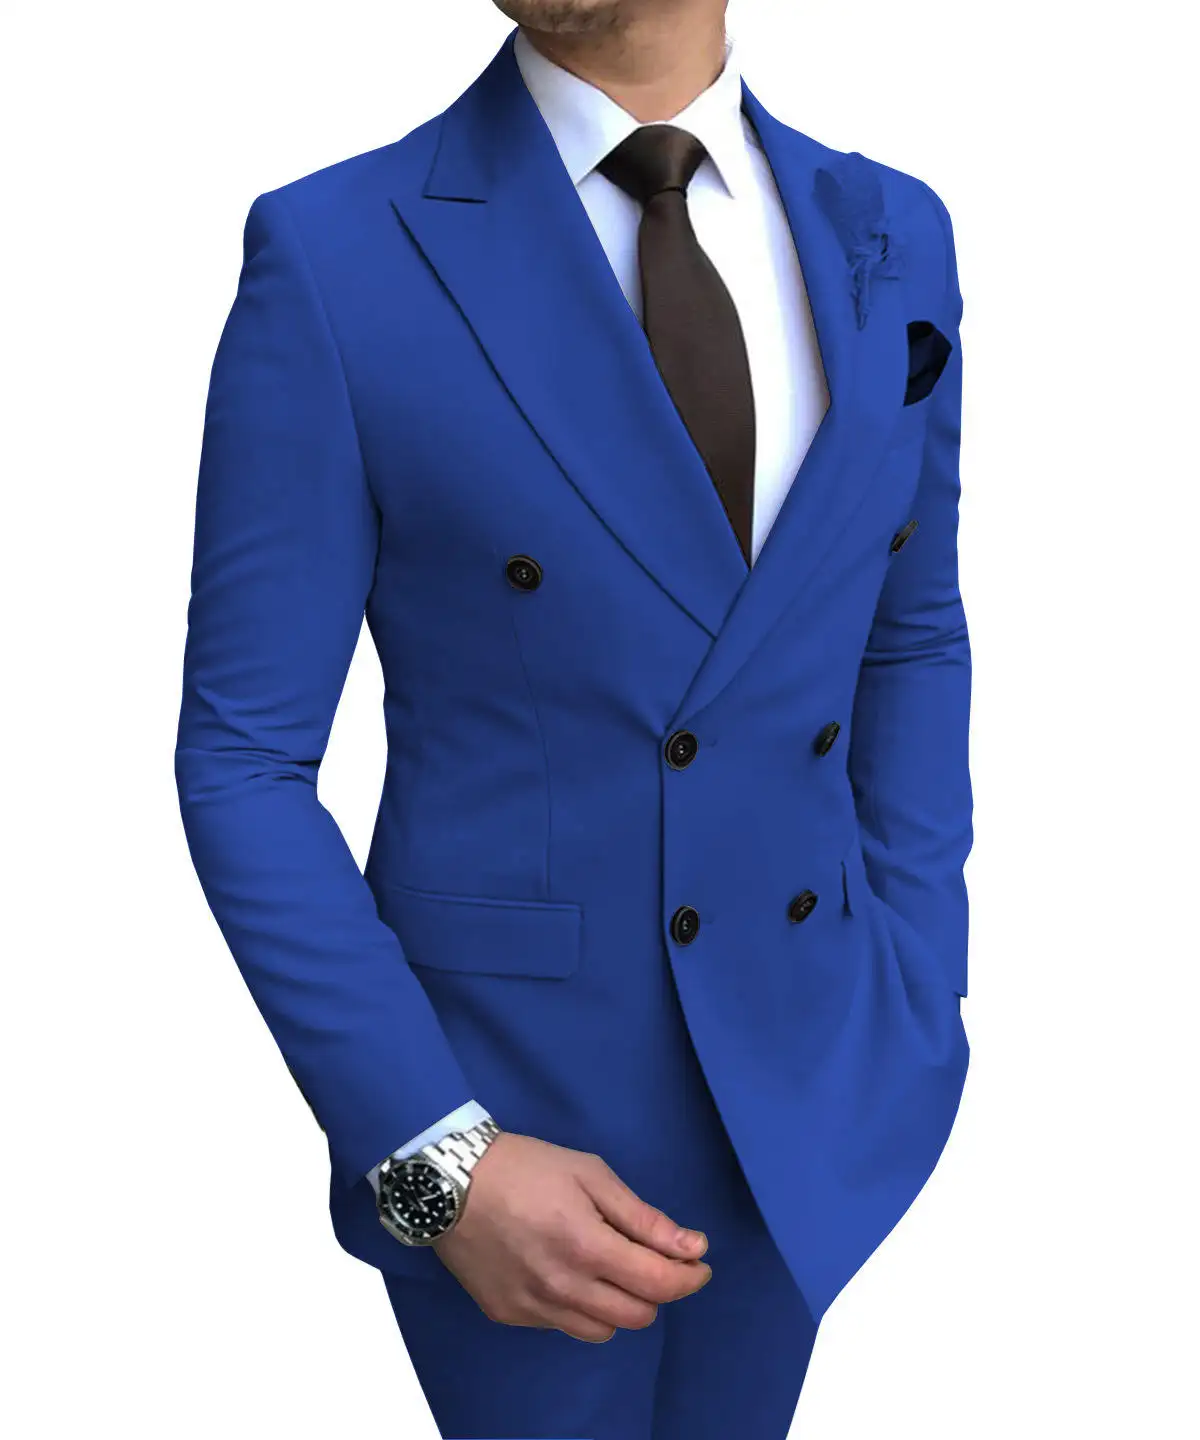 Venta al por mayor personalización de dos piezas padrinos de boda ropa chaquetas formales Slim traje de trabajo ropa Smart Business trajes de hombre